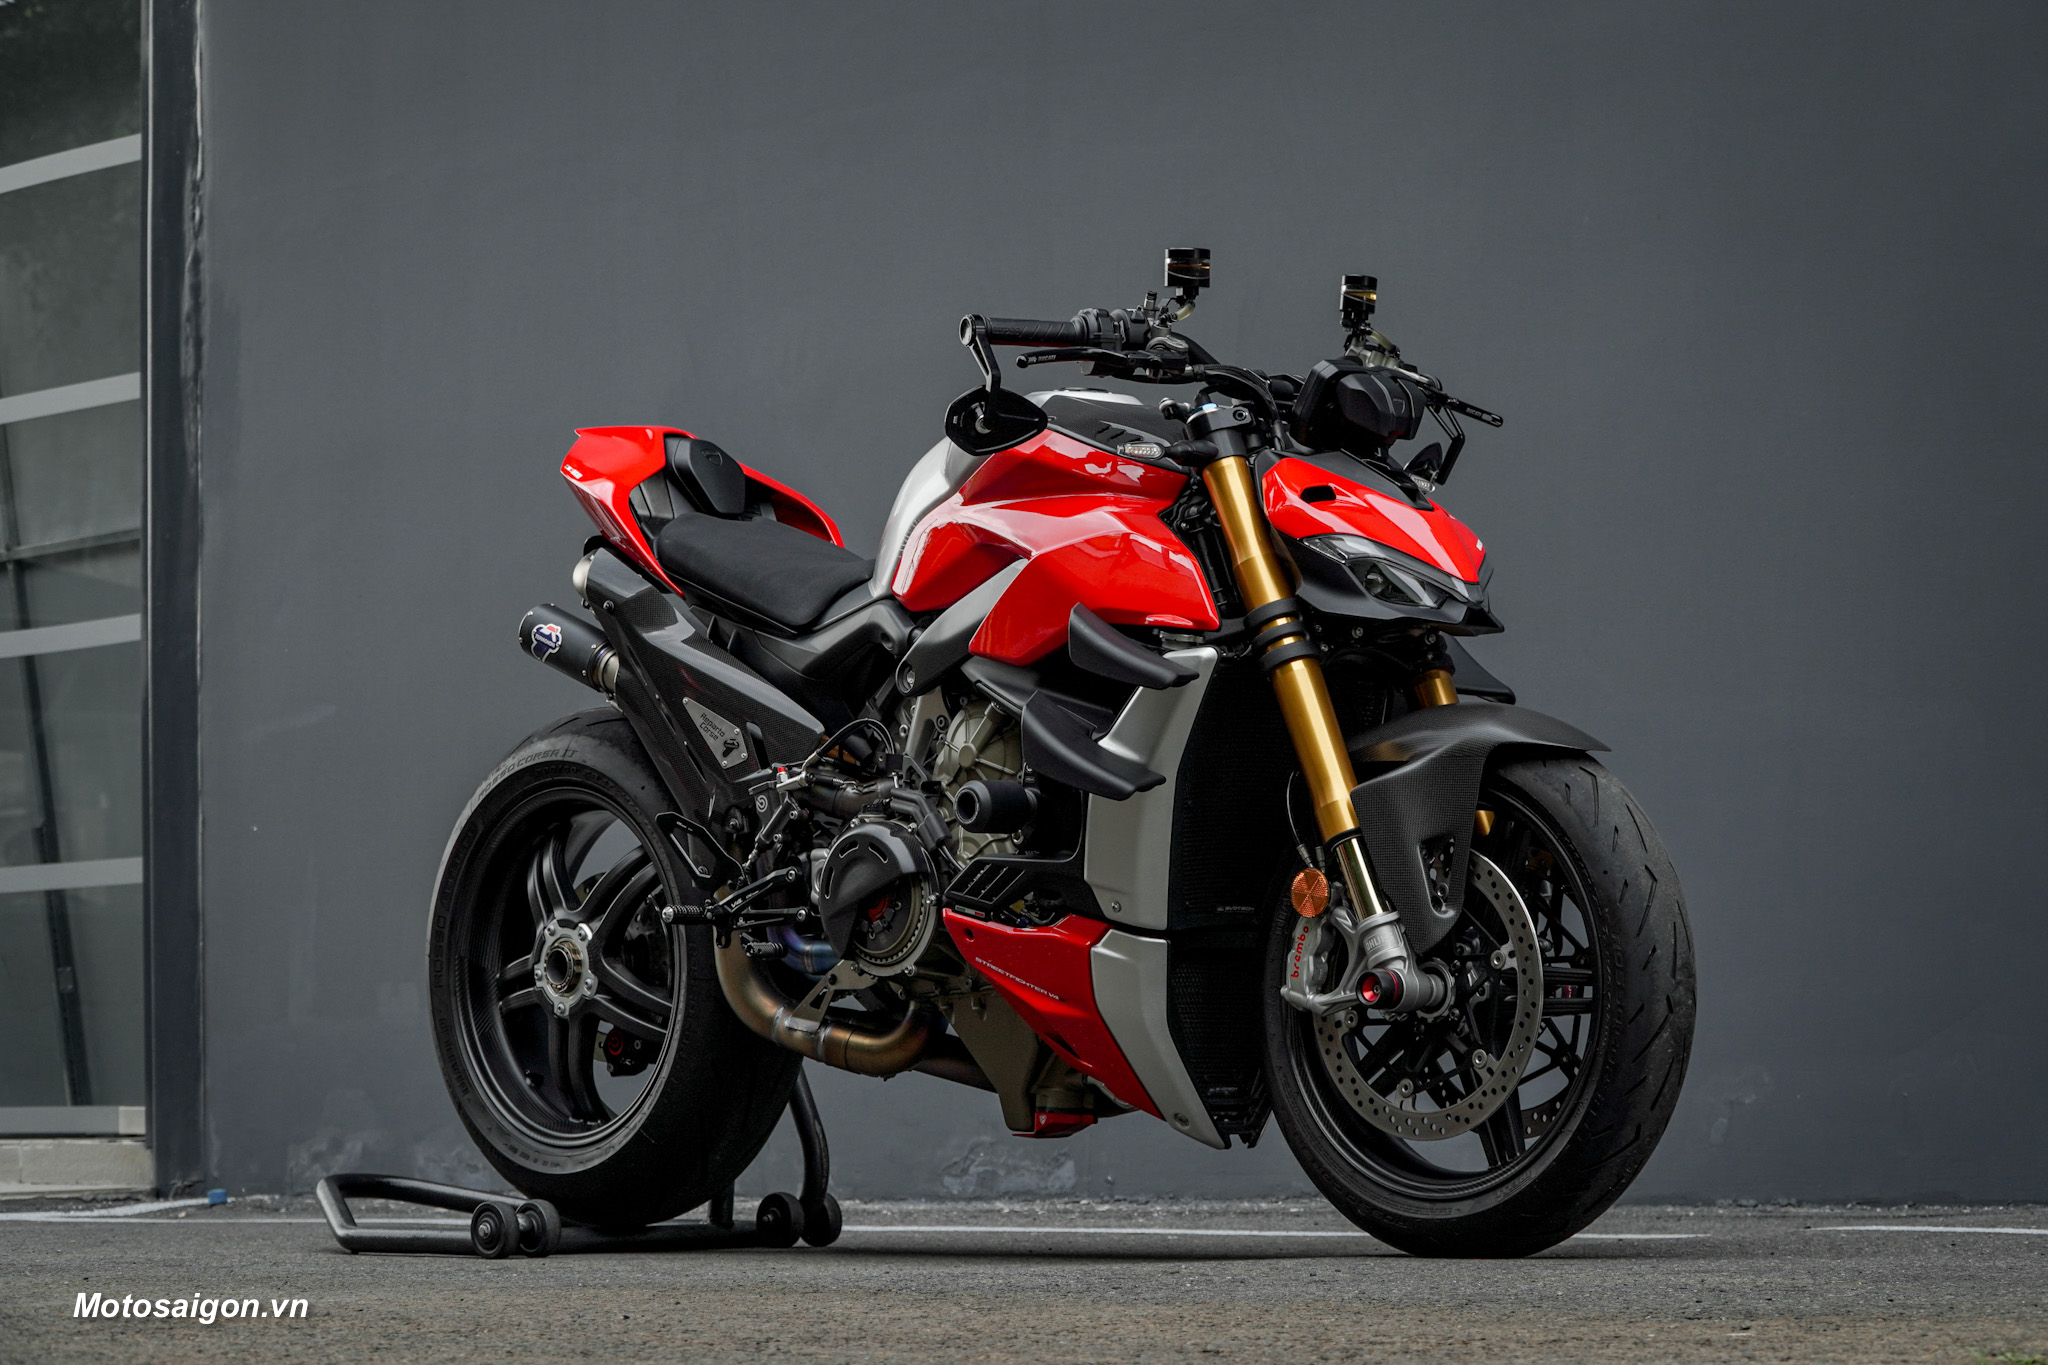 Cực độc Ducati Streetfighter V4 S lên đồ chơi gần tỷ đồng của dân IT